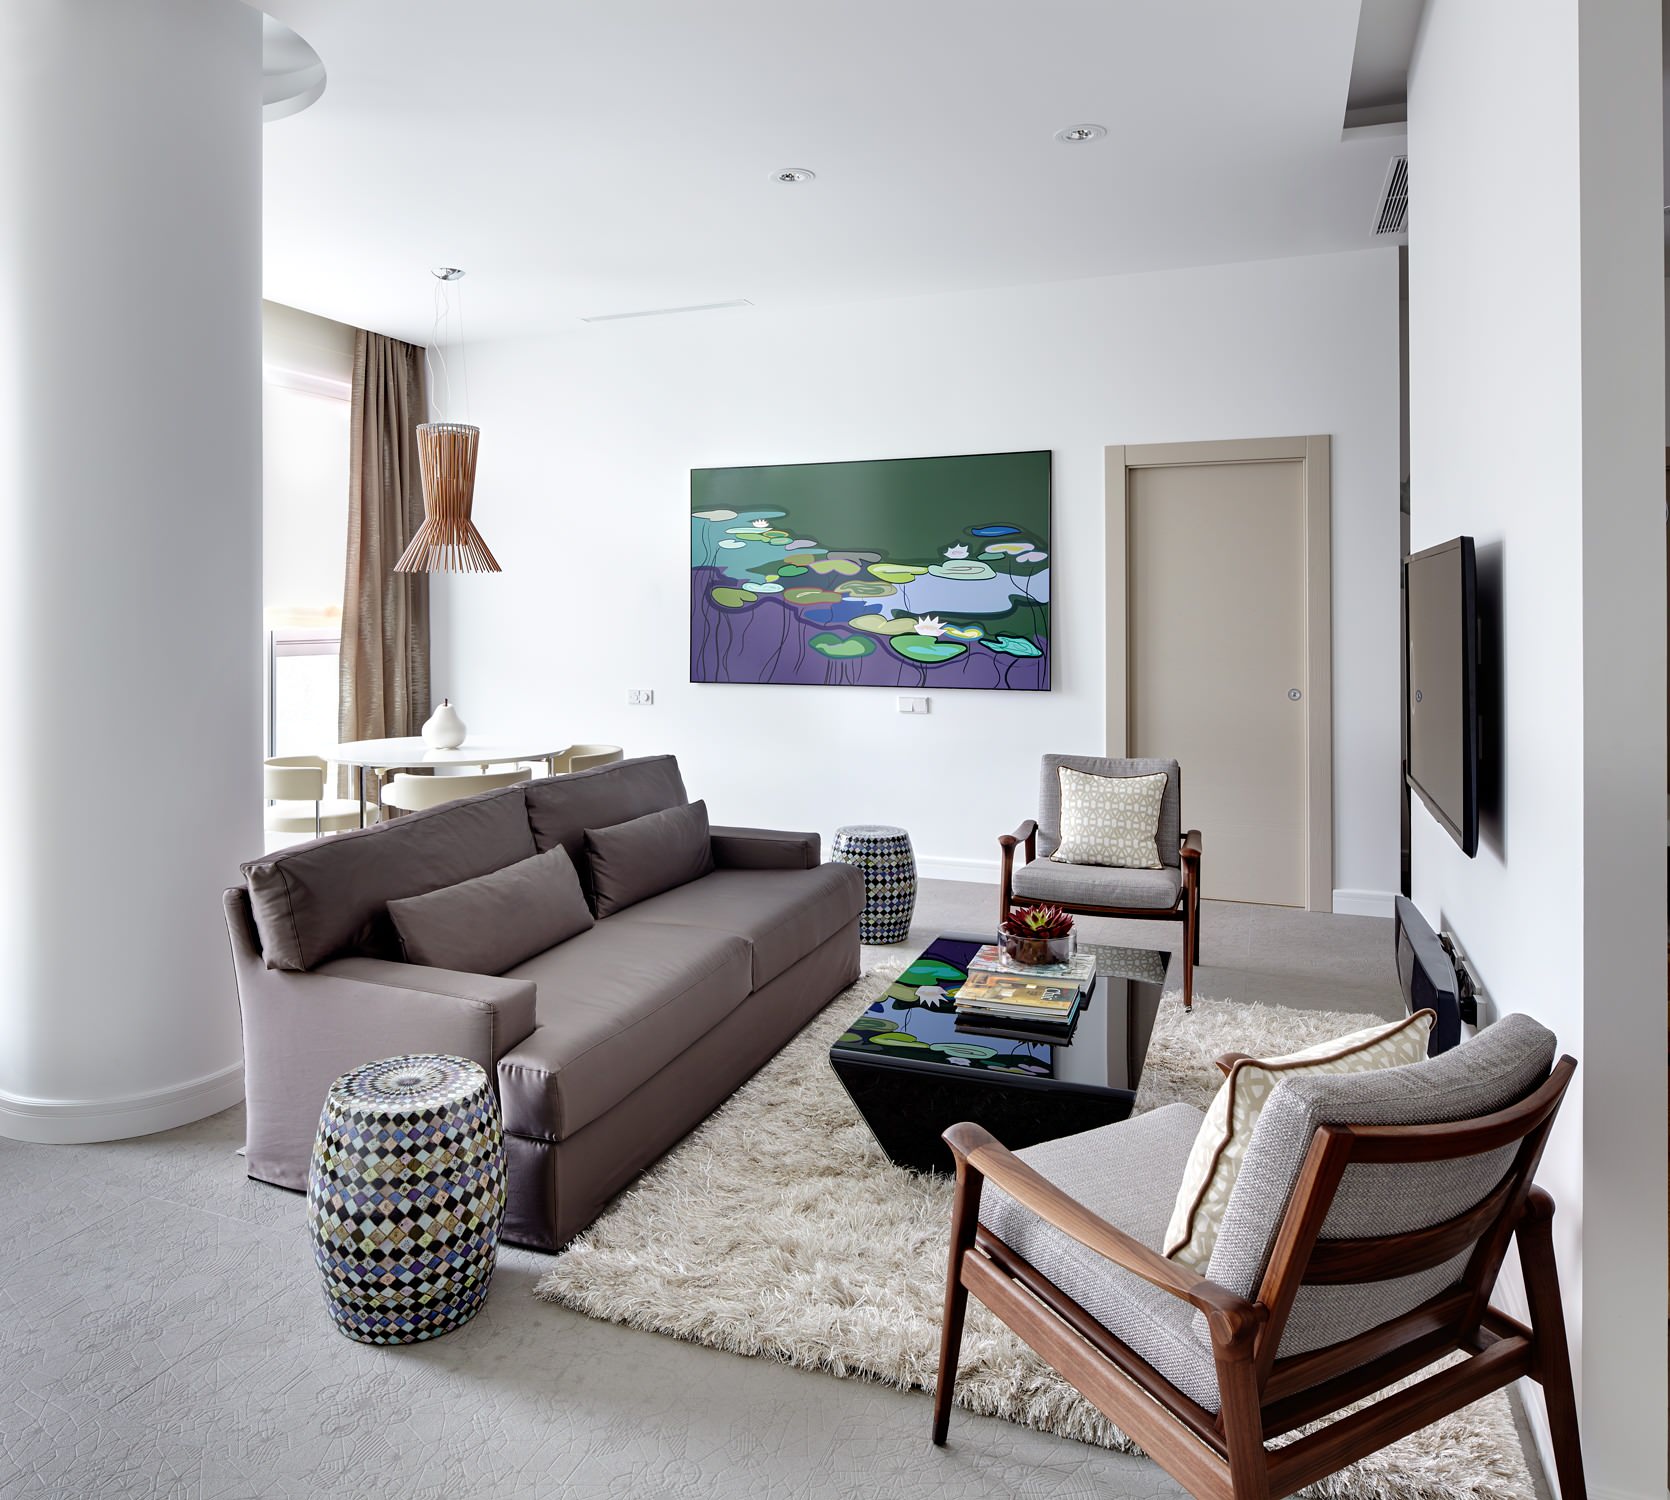 Как расставить диваны и кресла: варианты с одним диваном, двумя или тремядиванами в одной комнате